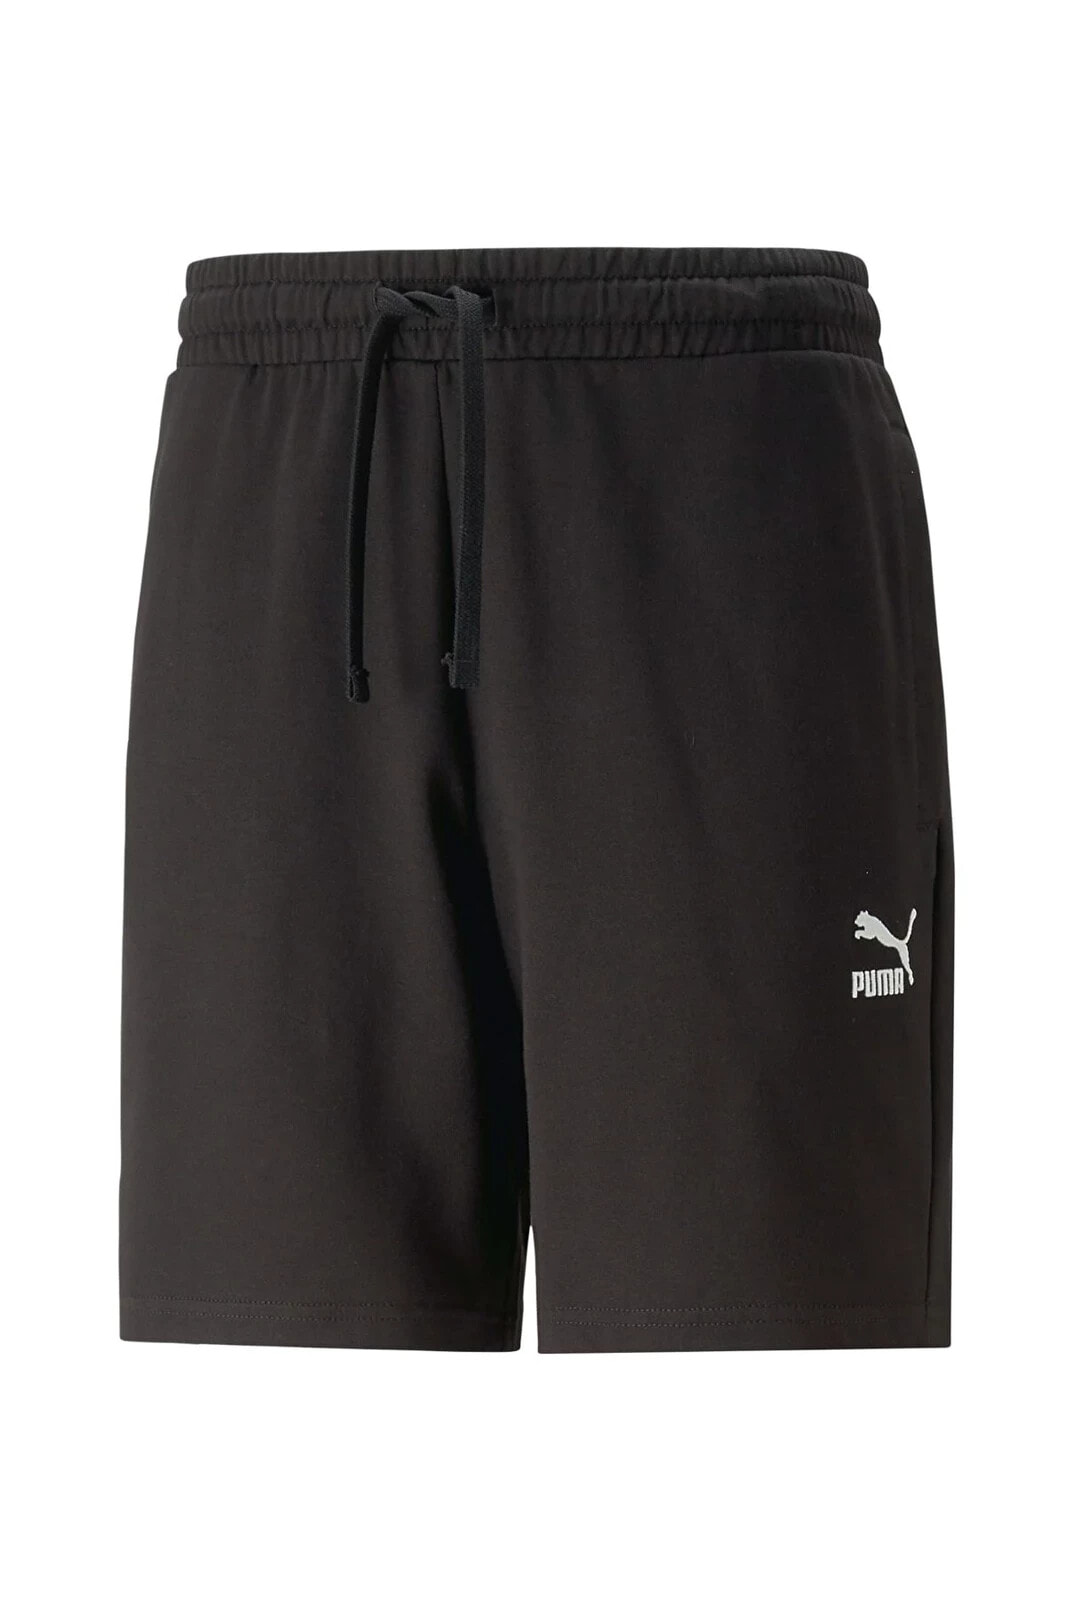 CLASSICS Shorts 8